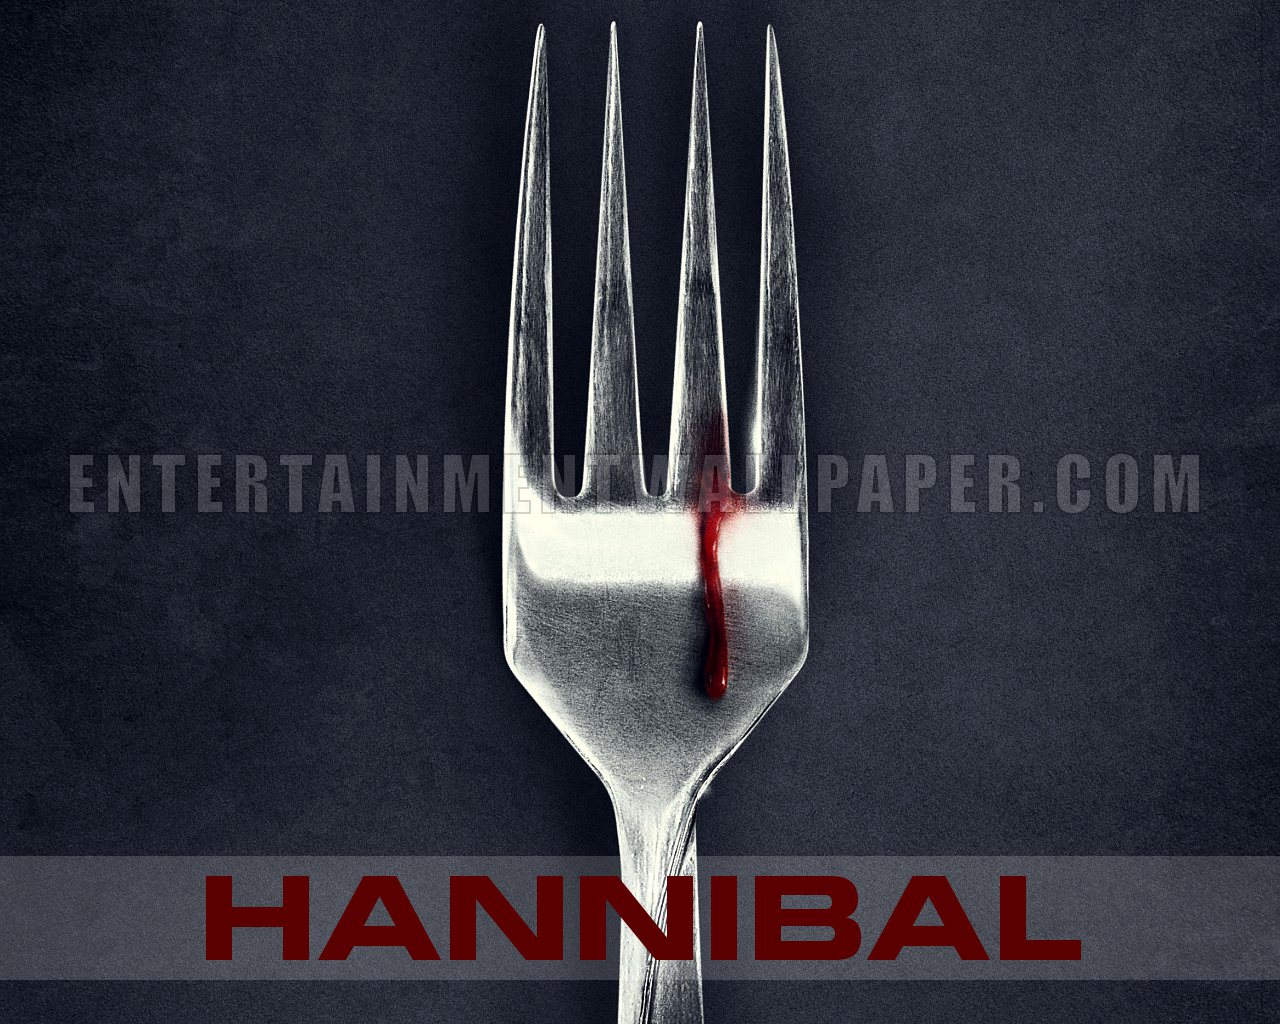 Hannibal Wallpaper - Hannibal TV Series Wallpaper (34406408) - Fanpop